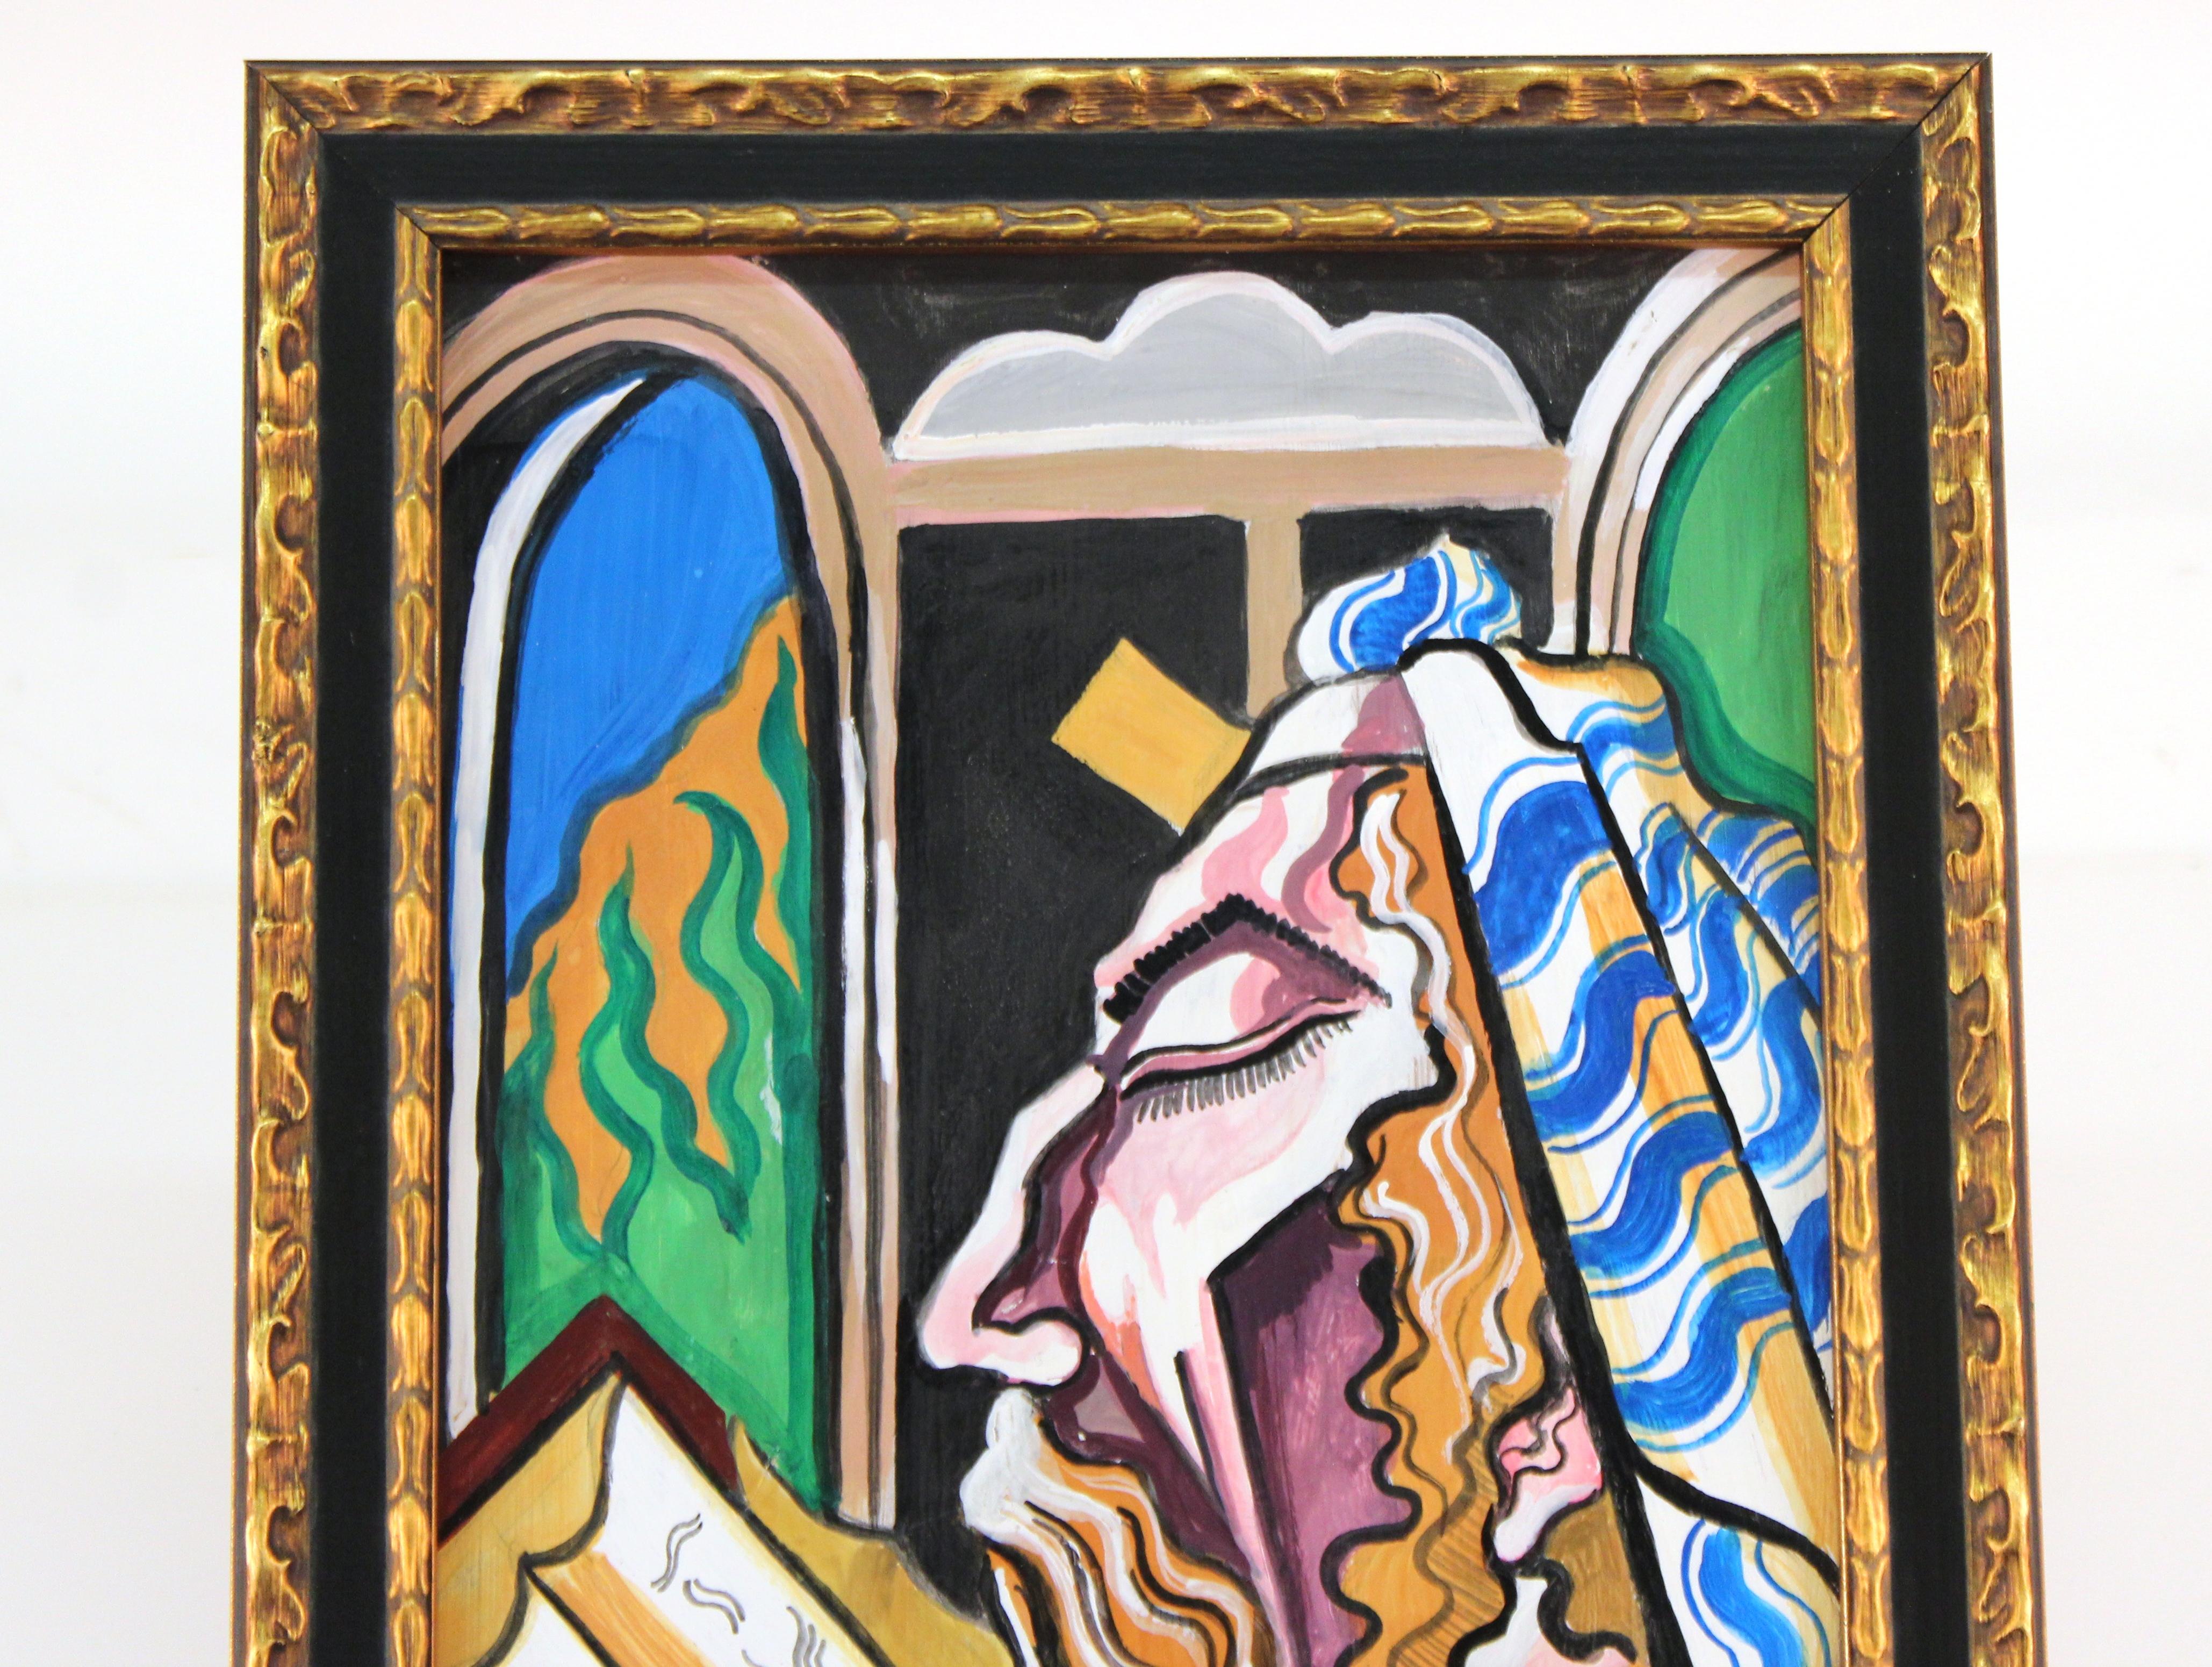 Portrait hongrois moderniste, rabbinique et judaïque, à l'huile et à la détrempe, attribué à Hugo Scheiber. Scheiber, né le 29 septembre 1873 à Budapest, mort le 7 mars 1950, était un peintre expressionniste moderniste hongrois. La pièce est signée